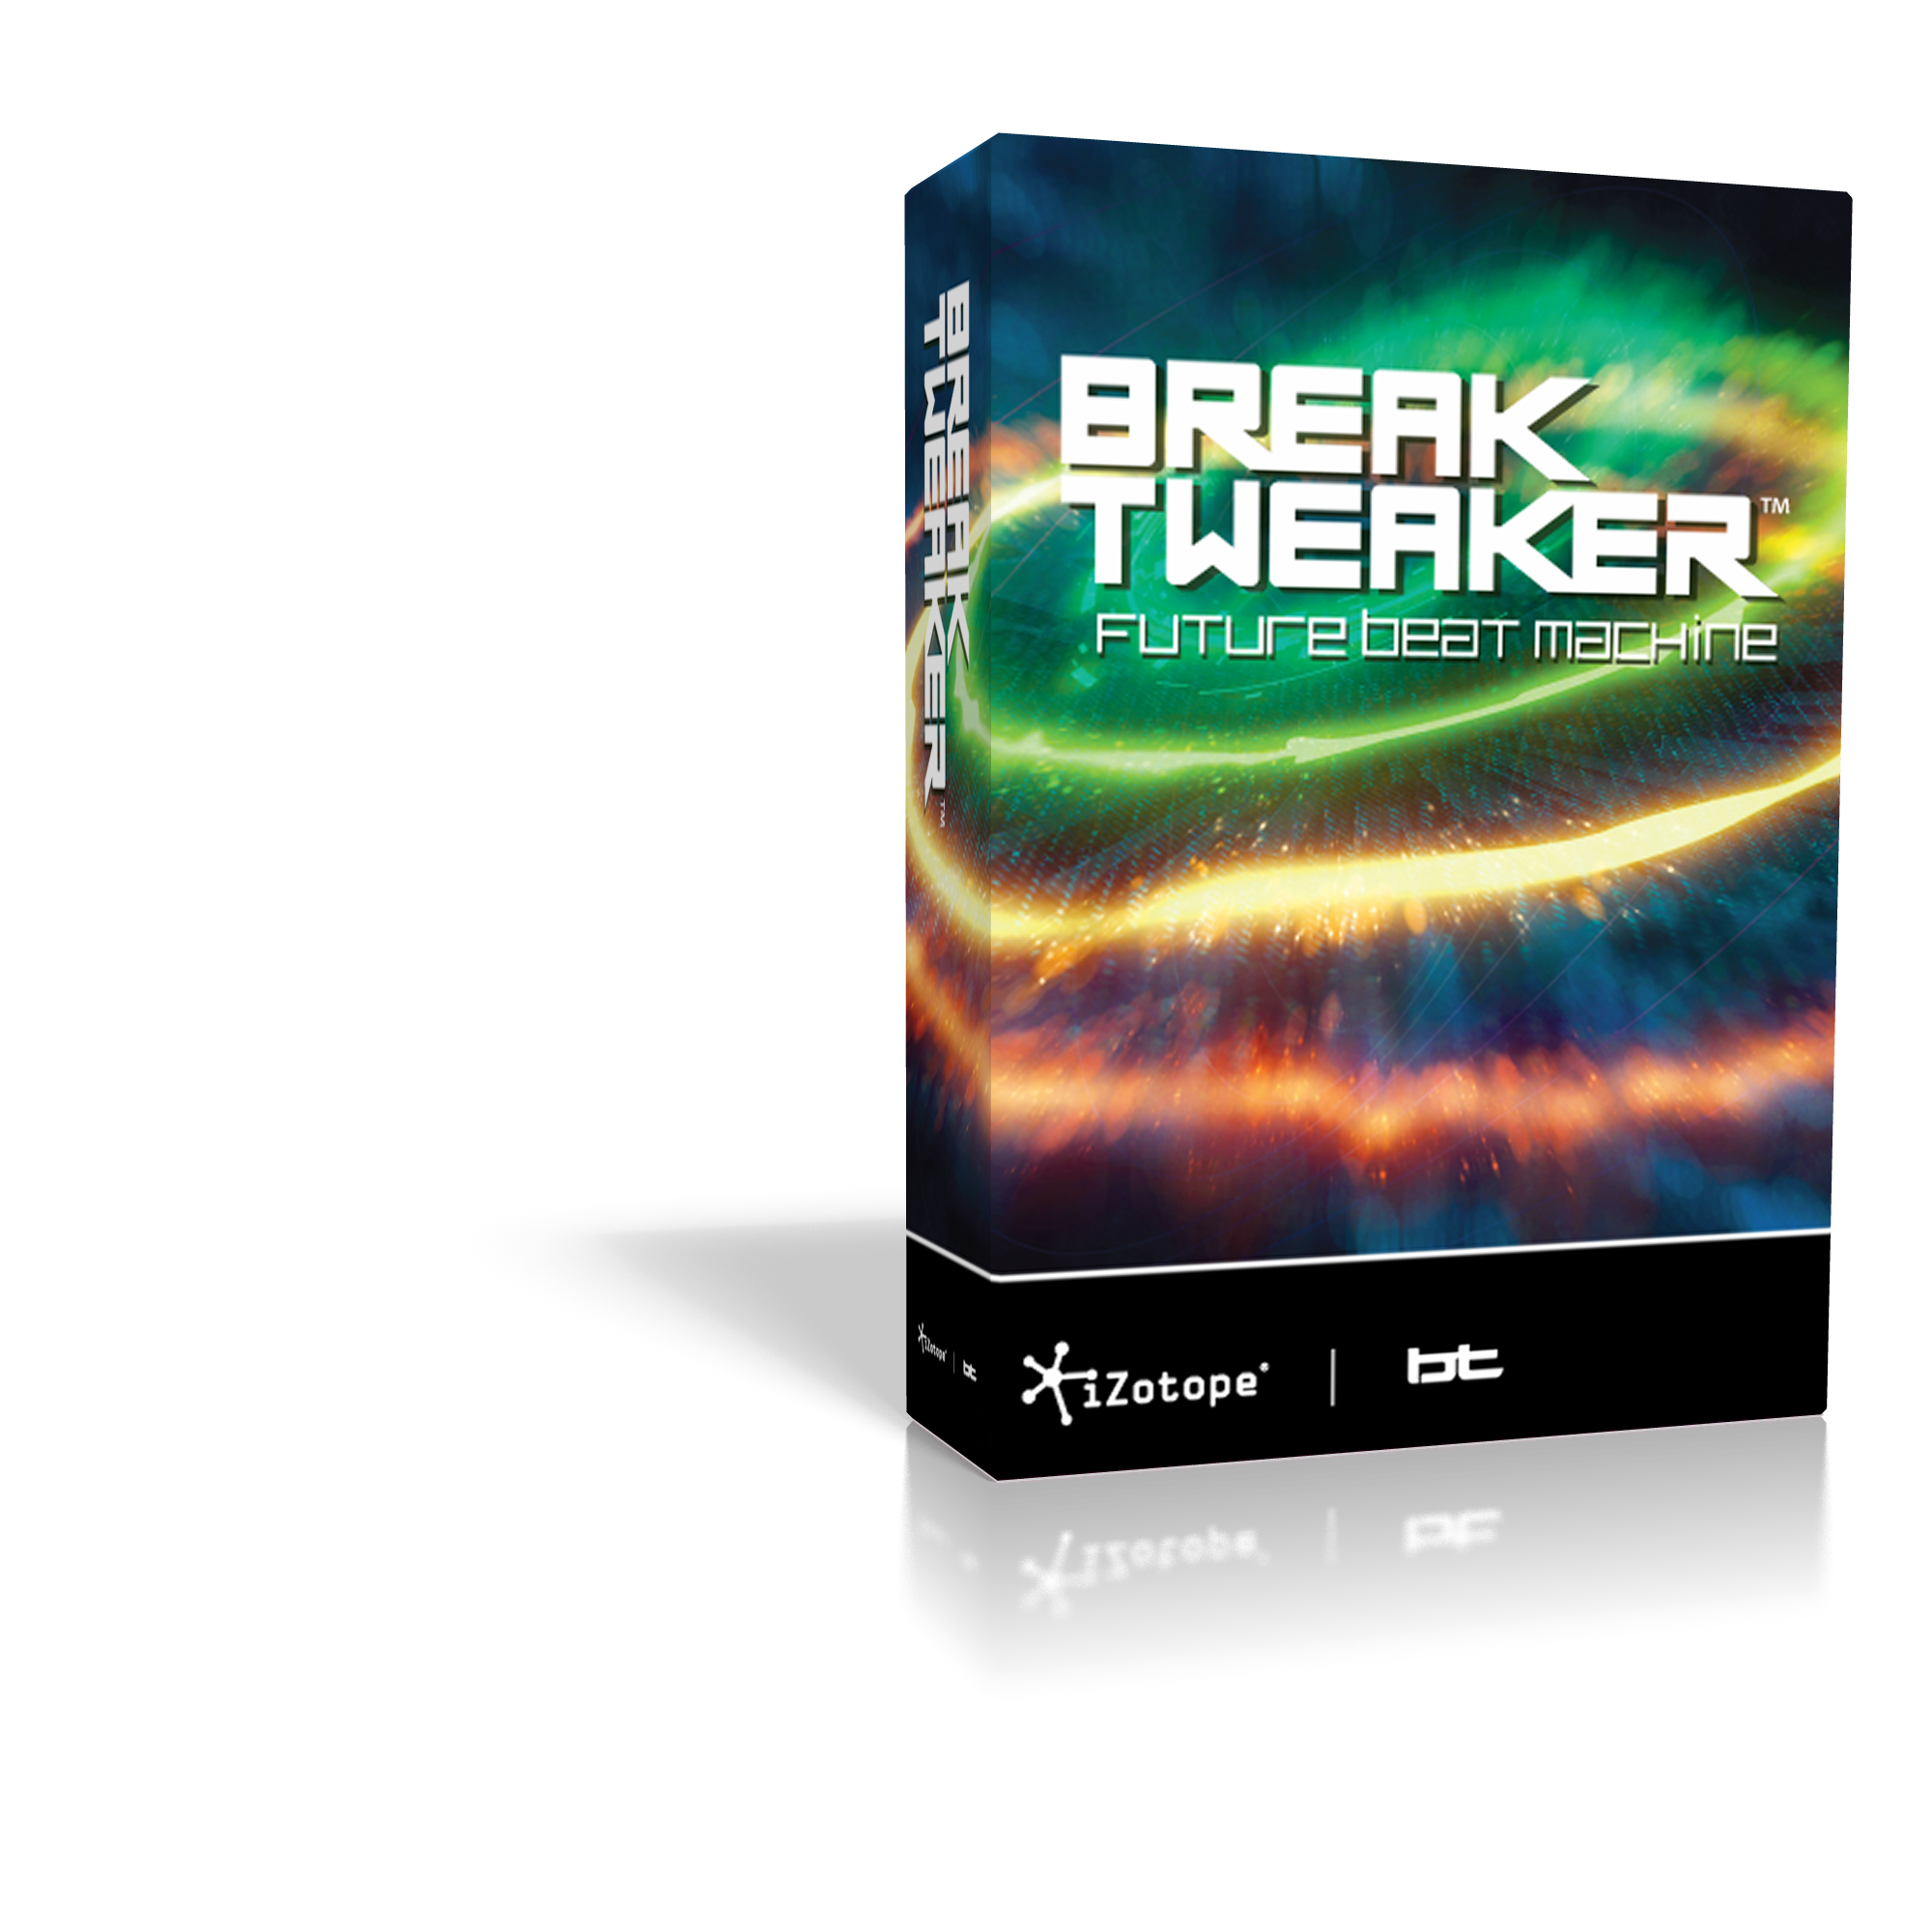 Breaktweaker